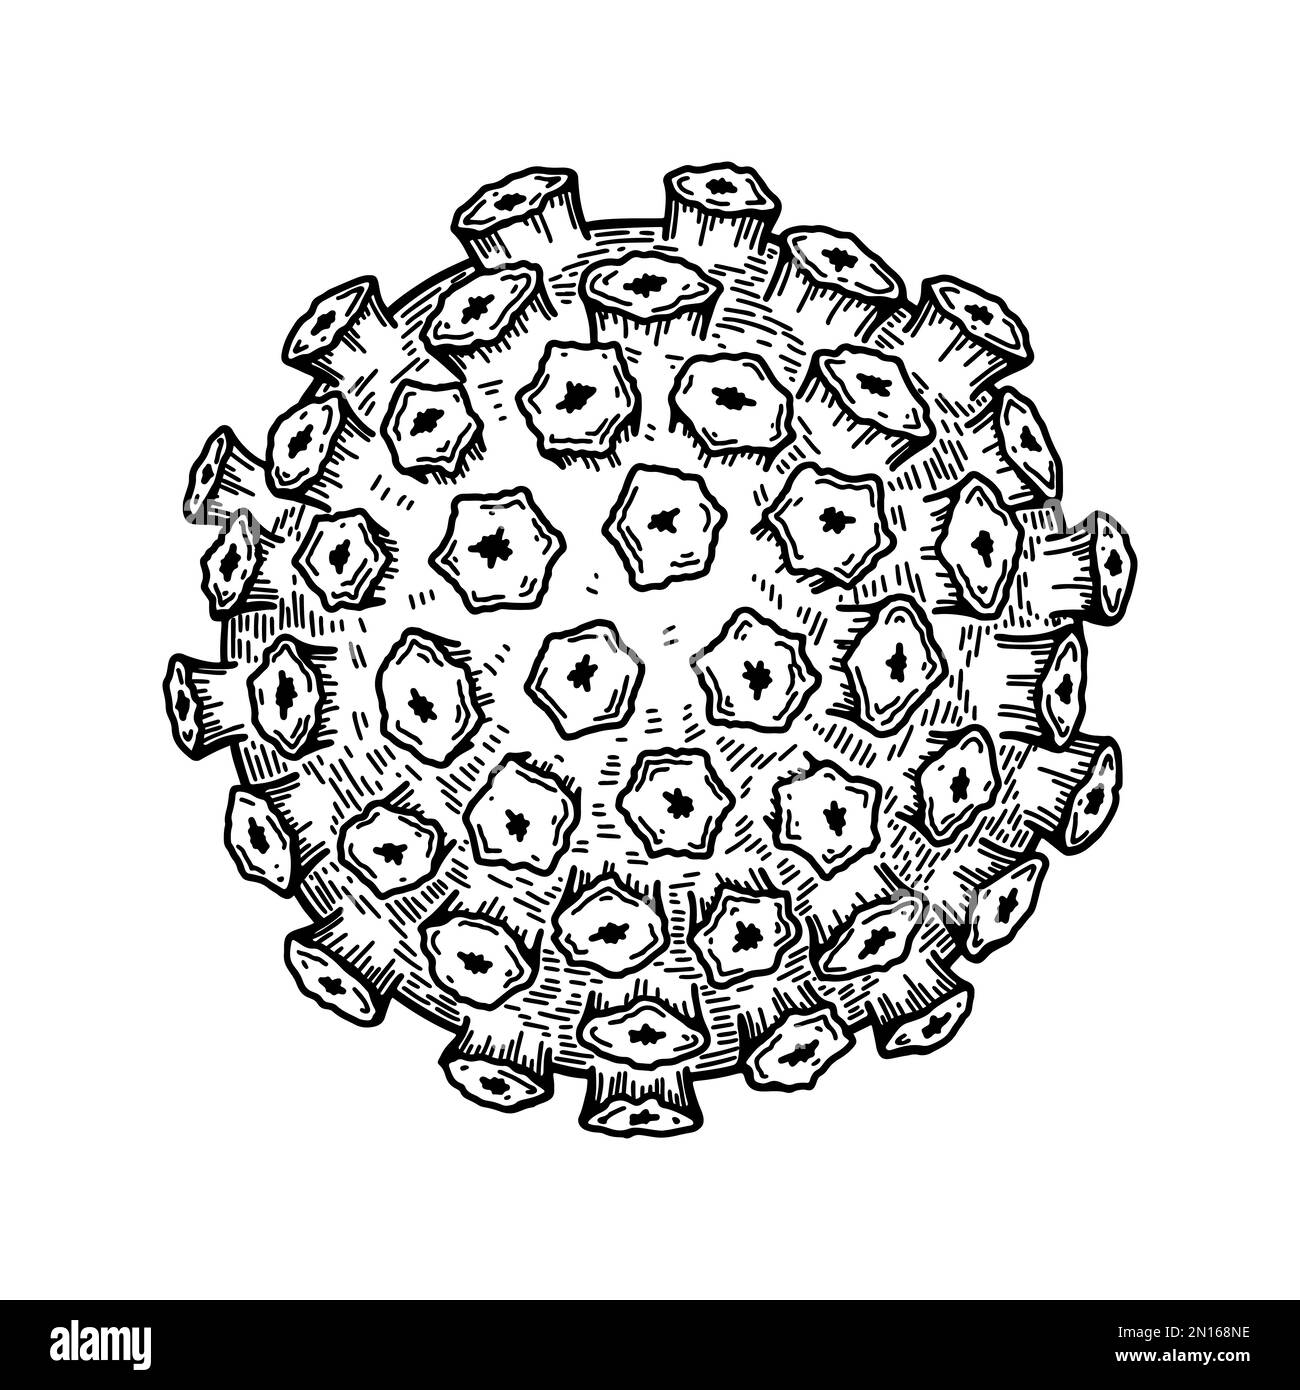 Papillomavirus auf weißem Hintergrund isoliert. Handgezeichnete, realistische, wissenschaftlich fundierte Vektordarstellung im Skizzenstil Stock Vektor